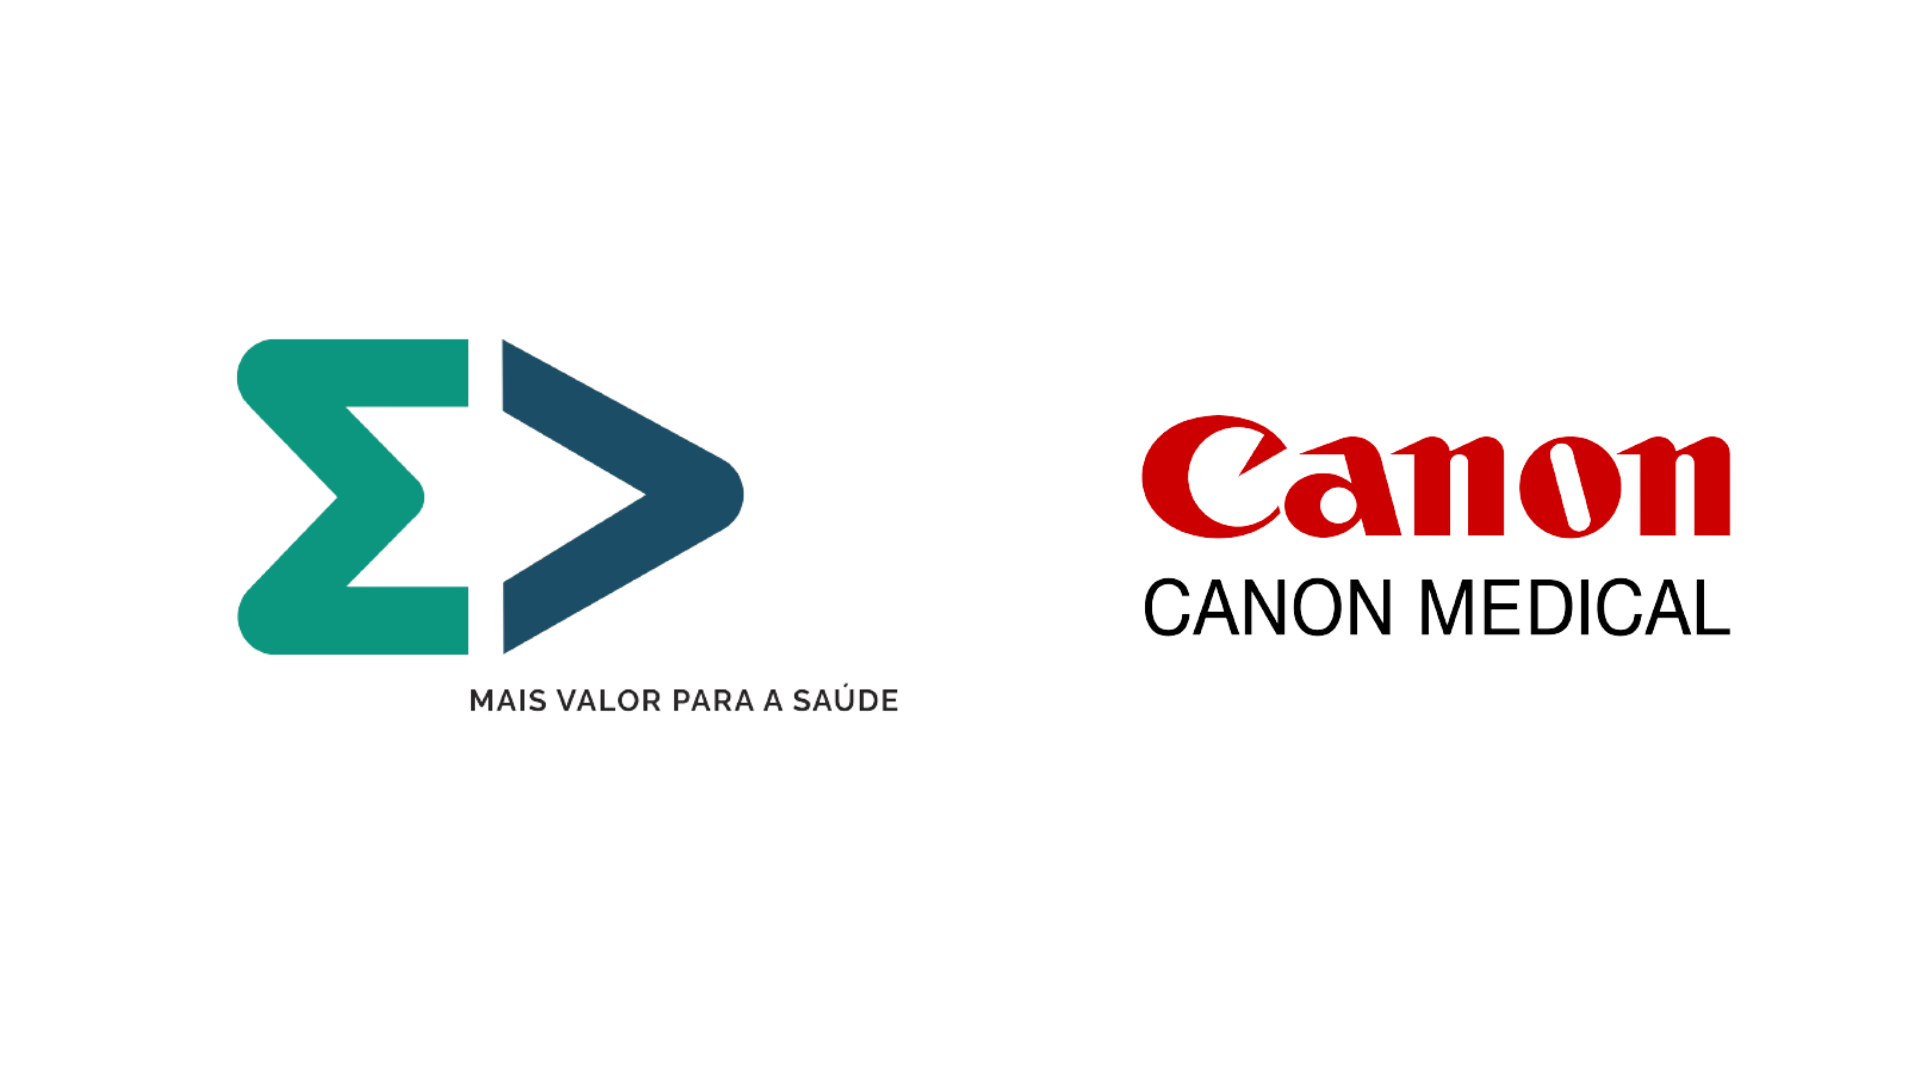 Canon e MV juntas para maior eficiência em Medicina Diagnóstica